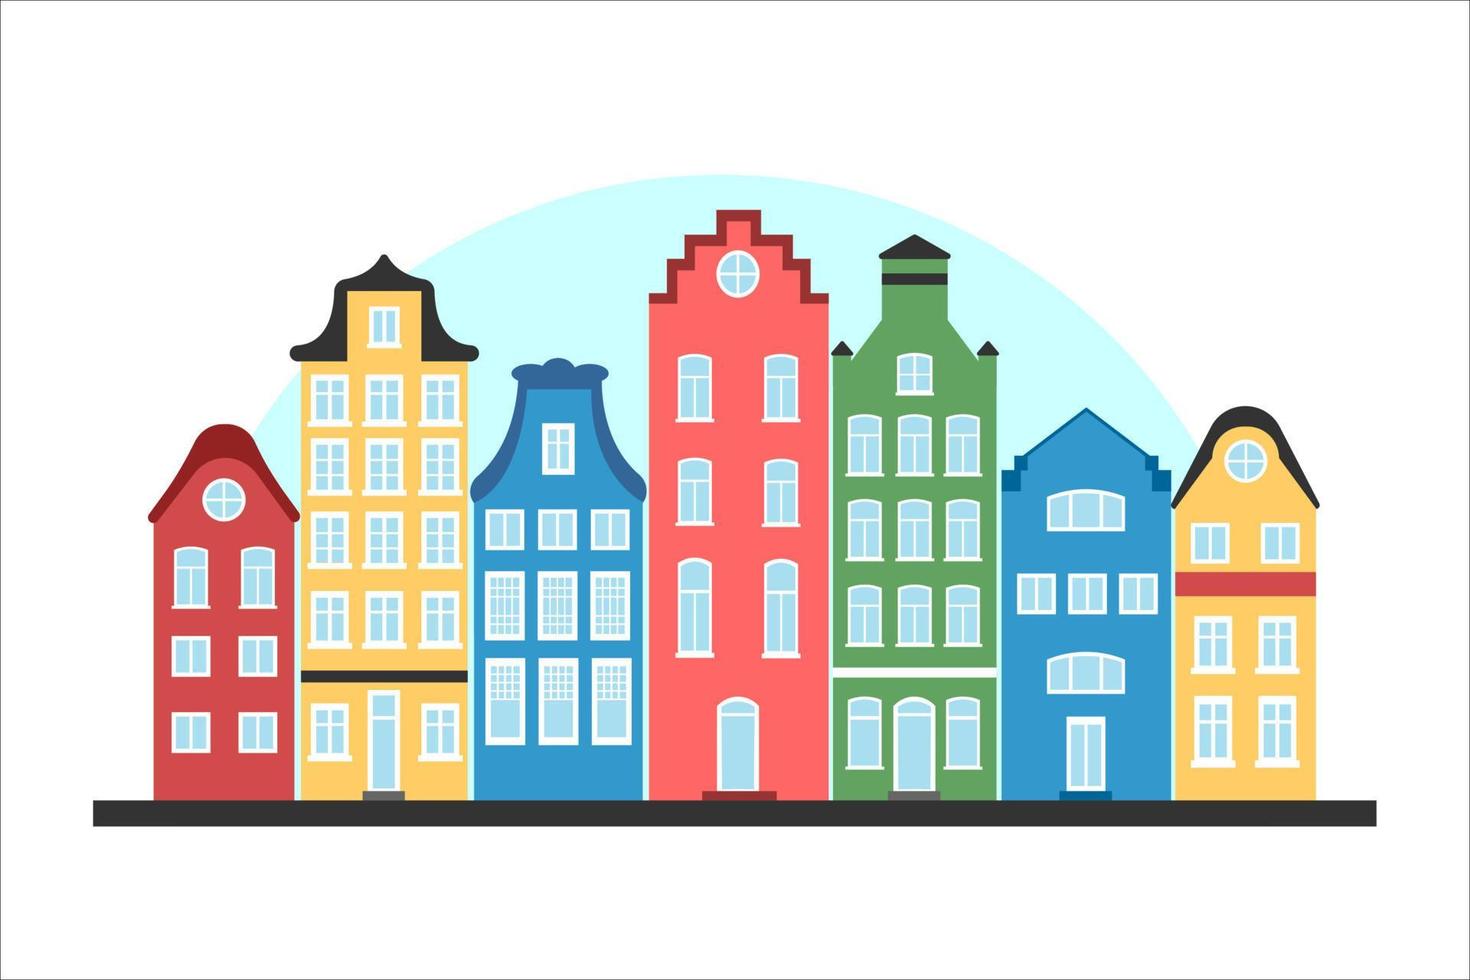 paisagem urbana de design plano. casas coloridas em estilo europeu vetor